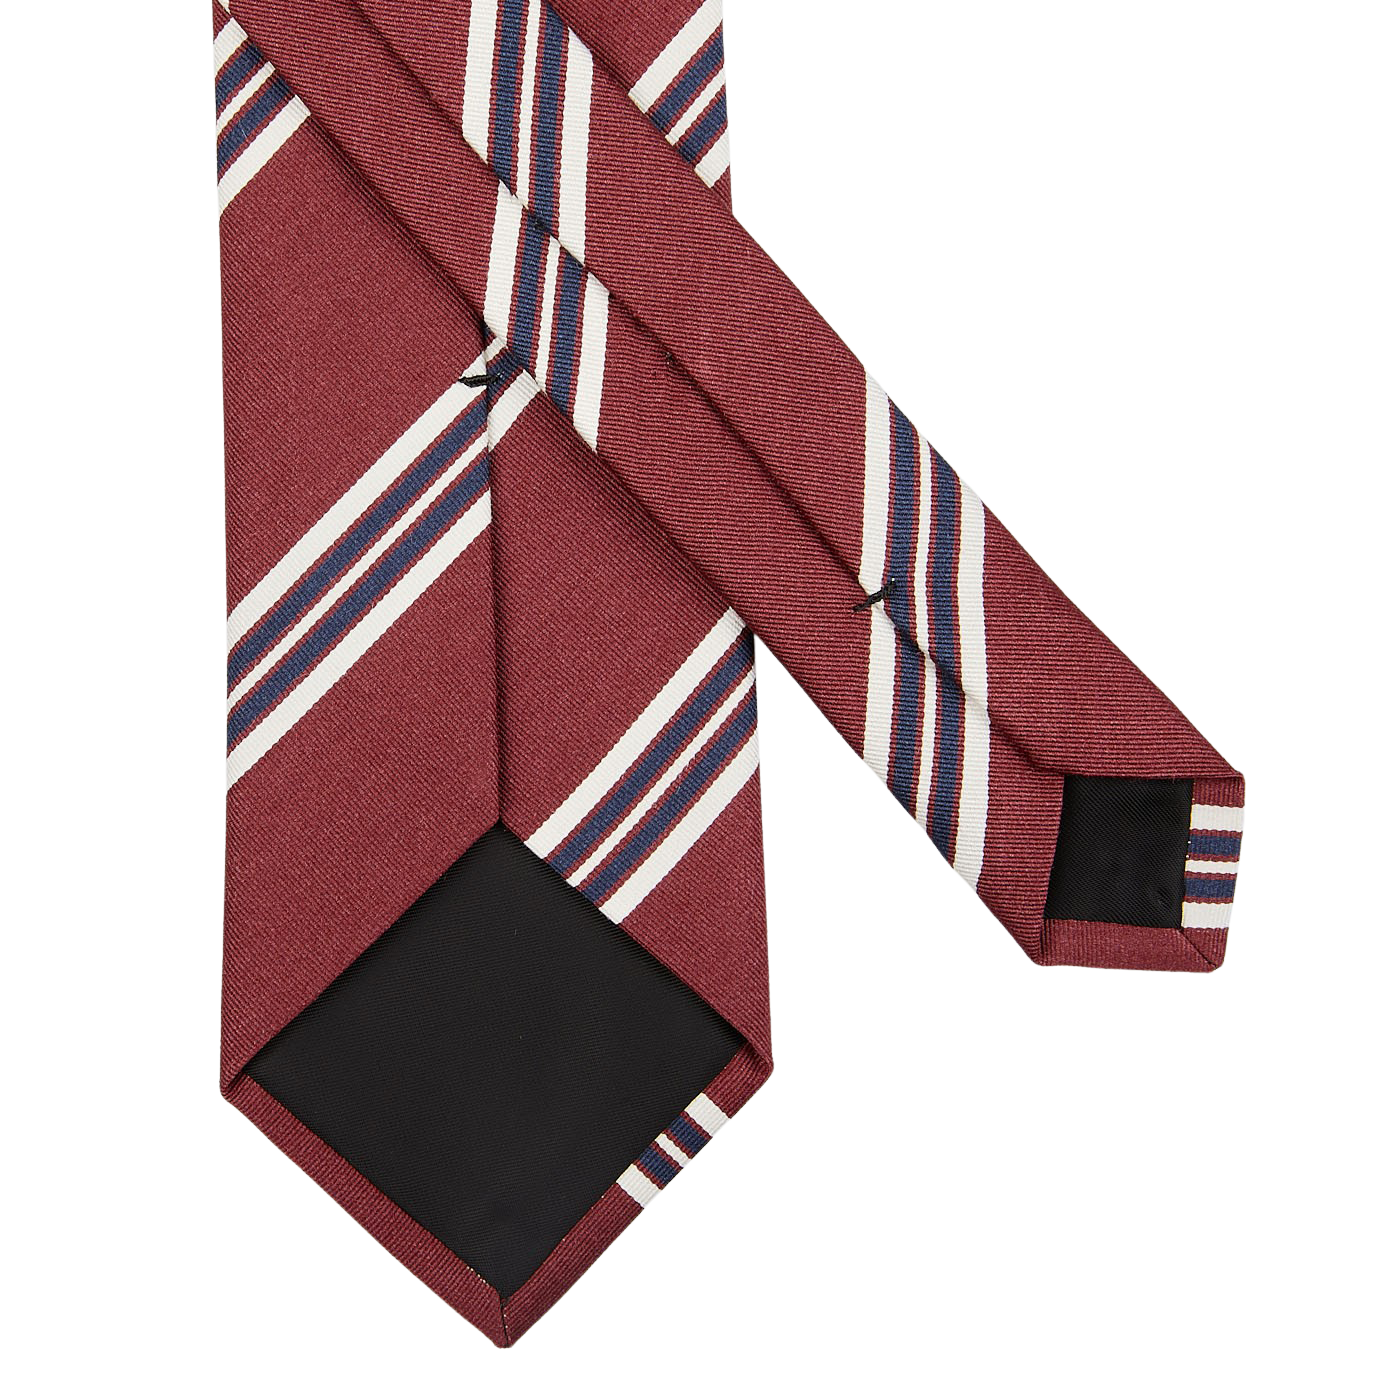 An Amanda Christensen wine-red striped silk-cotton blend necktie on a white background.